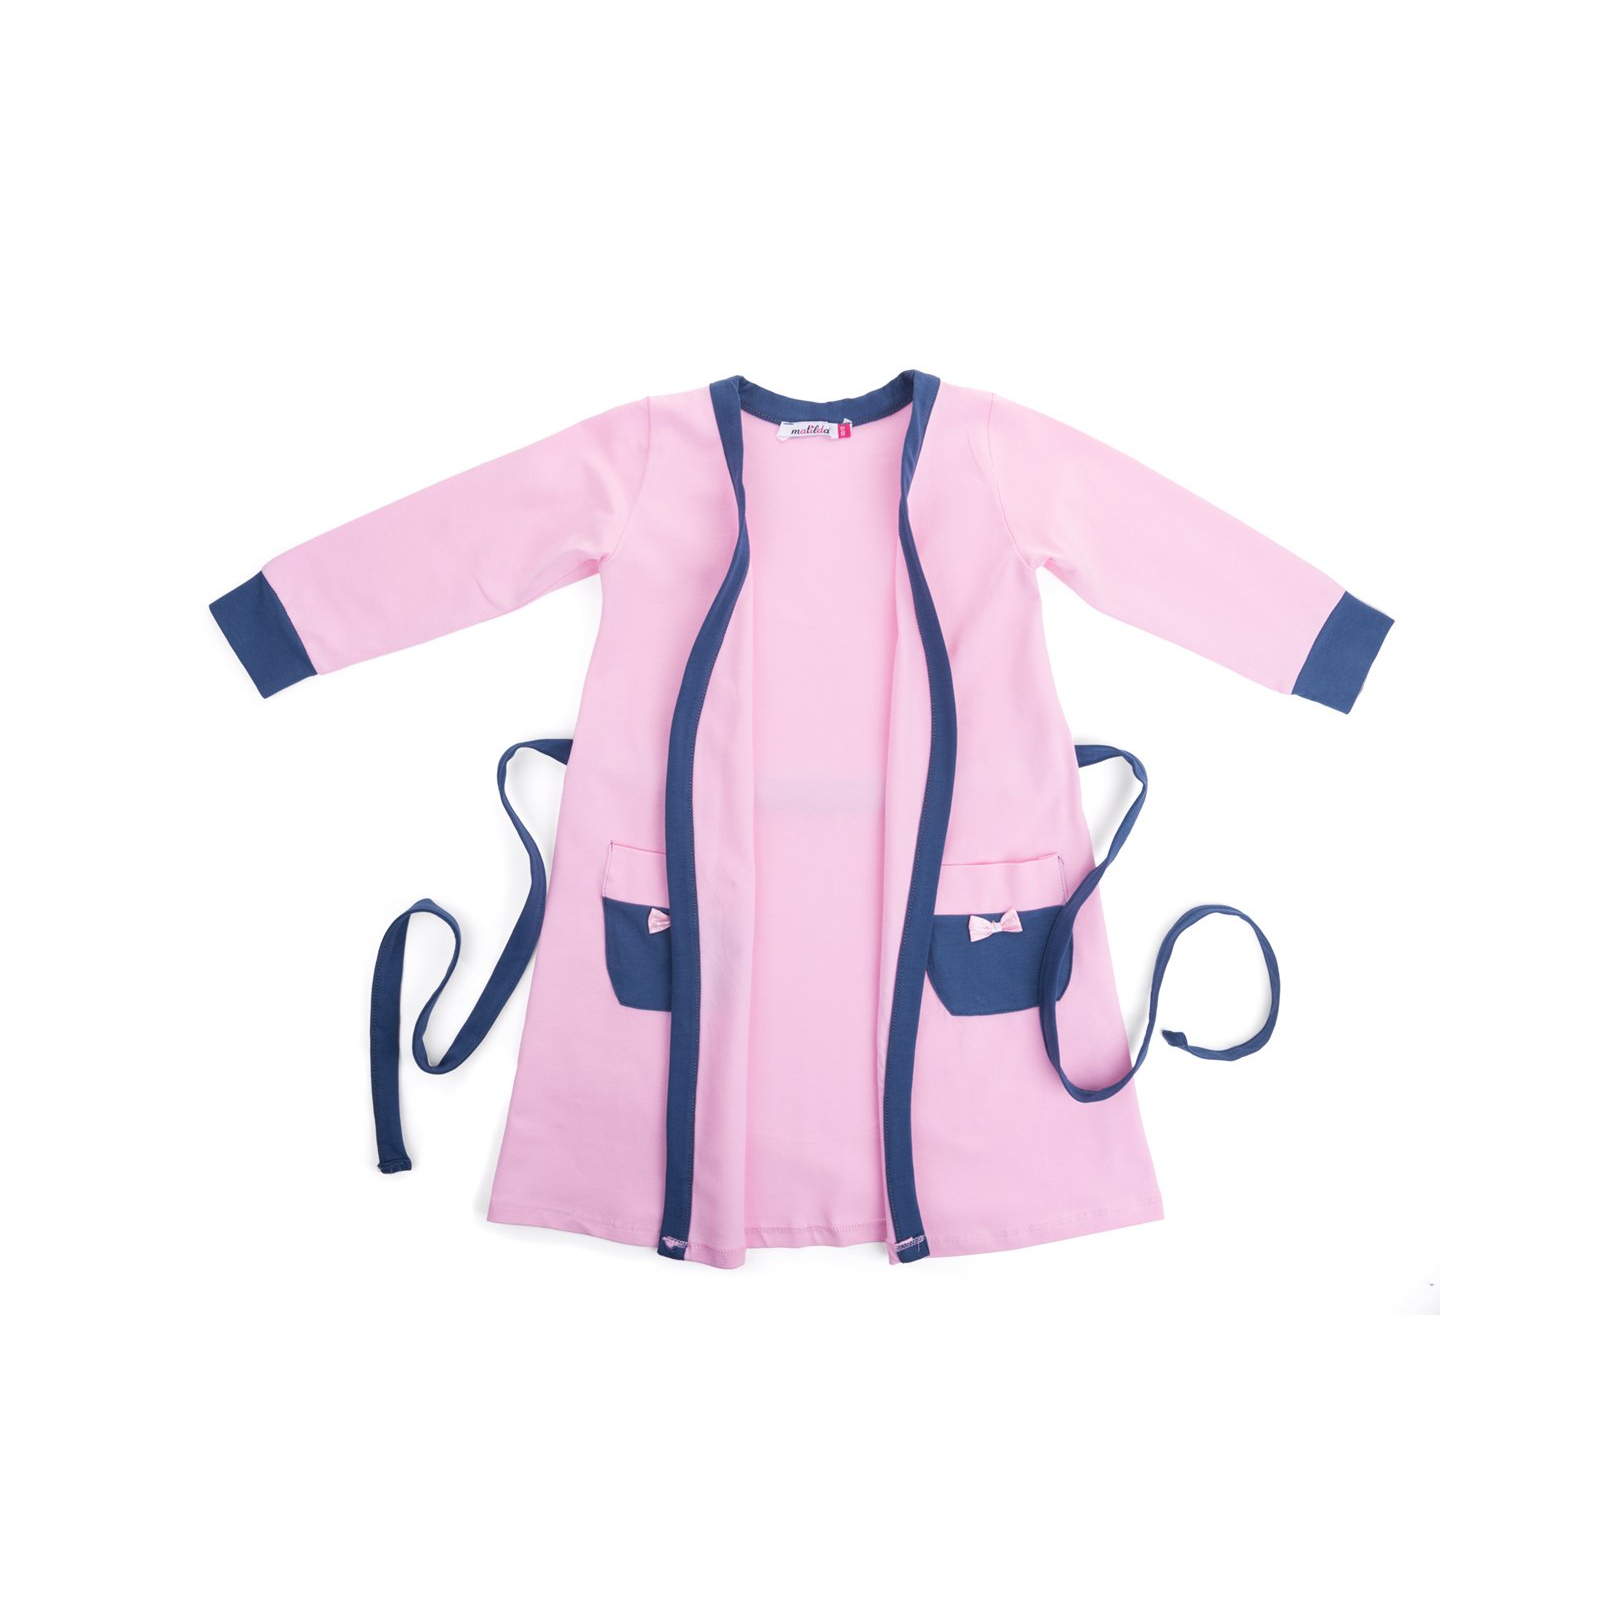 Пижама Matilda и халат с мишками "Love" (7445-116G-pink) изображение 4